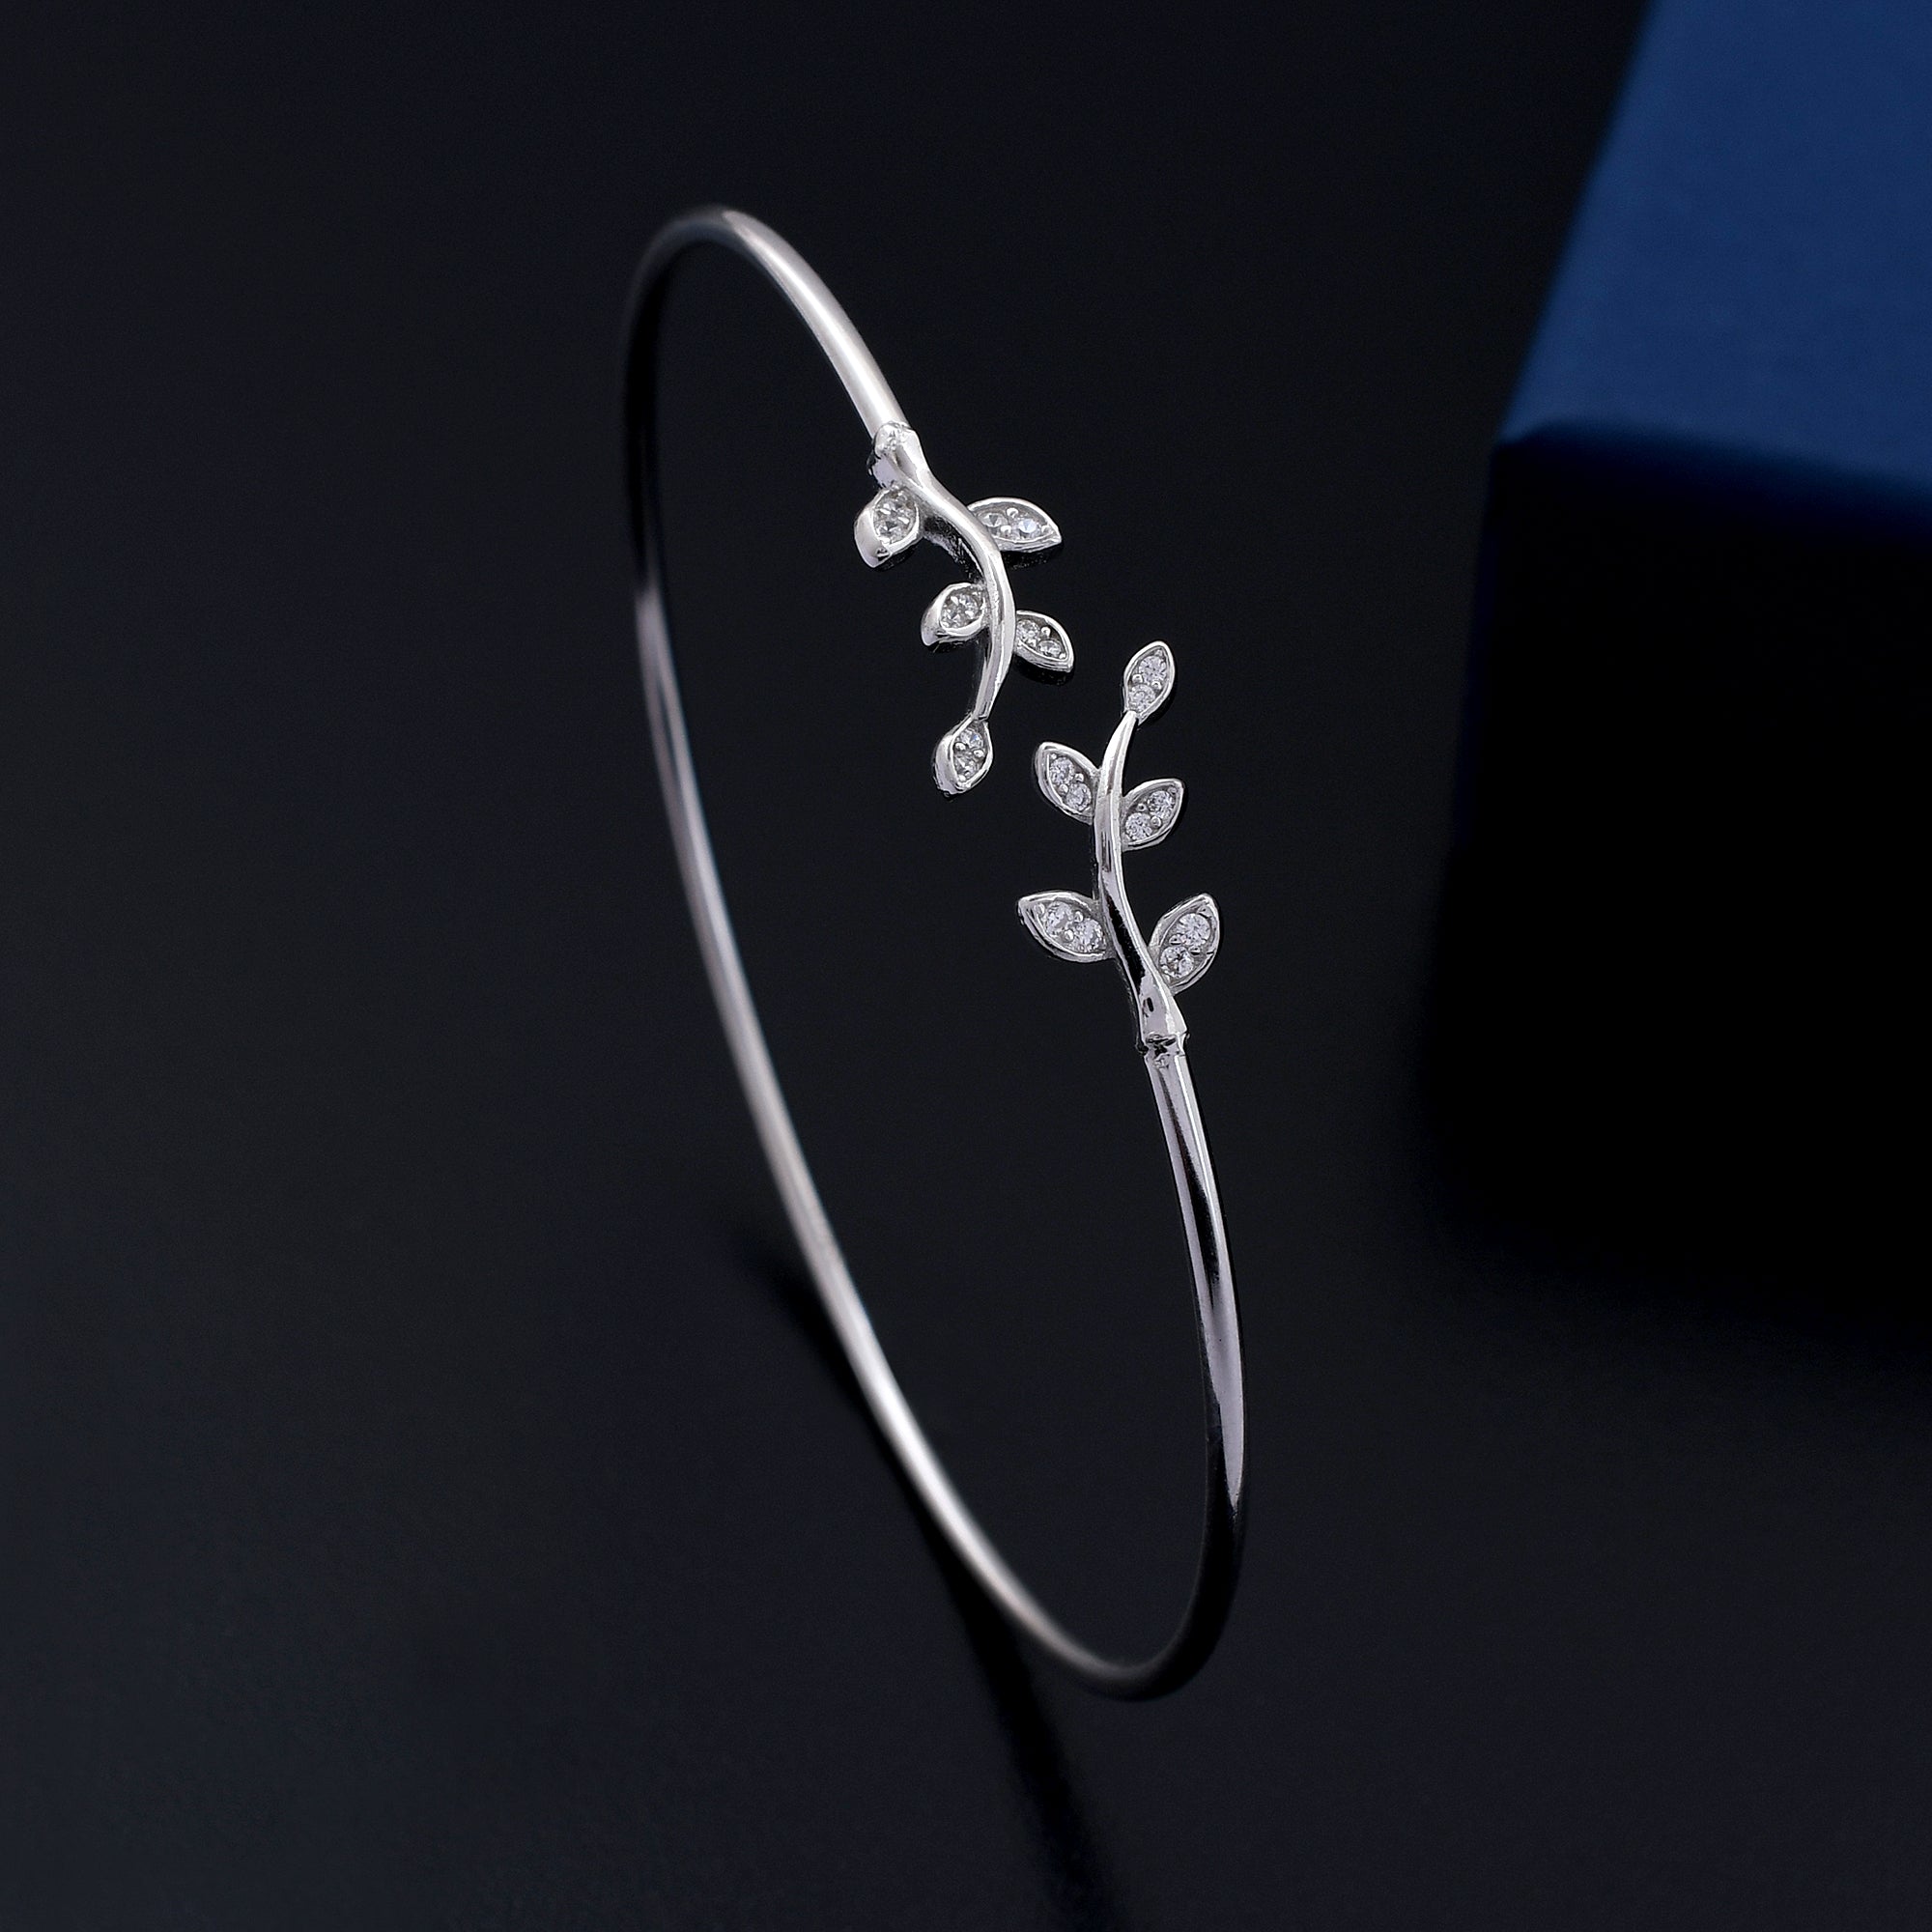 Leaf Design 925 Sterling Silver Bracelet